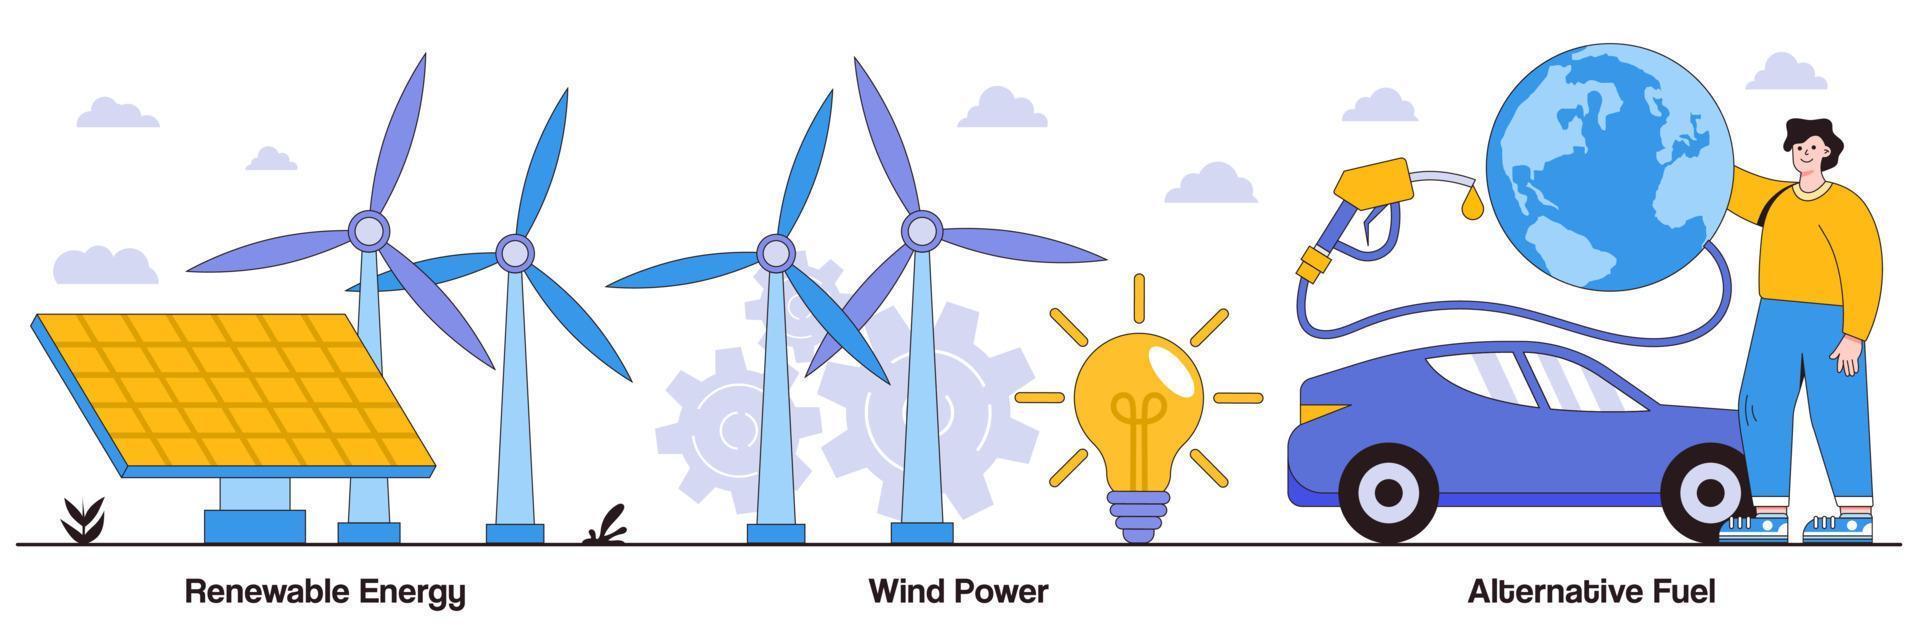 énergie renouvelable, énergie éolienne, concept de carburant alternatif avec caractère humain. ensemble d'illustrations vectorielles d'énergie propre. panneaux solaires, électricité verte, station de recharge, ampoule, métaphore du parc éolien vecteur